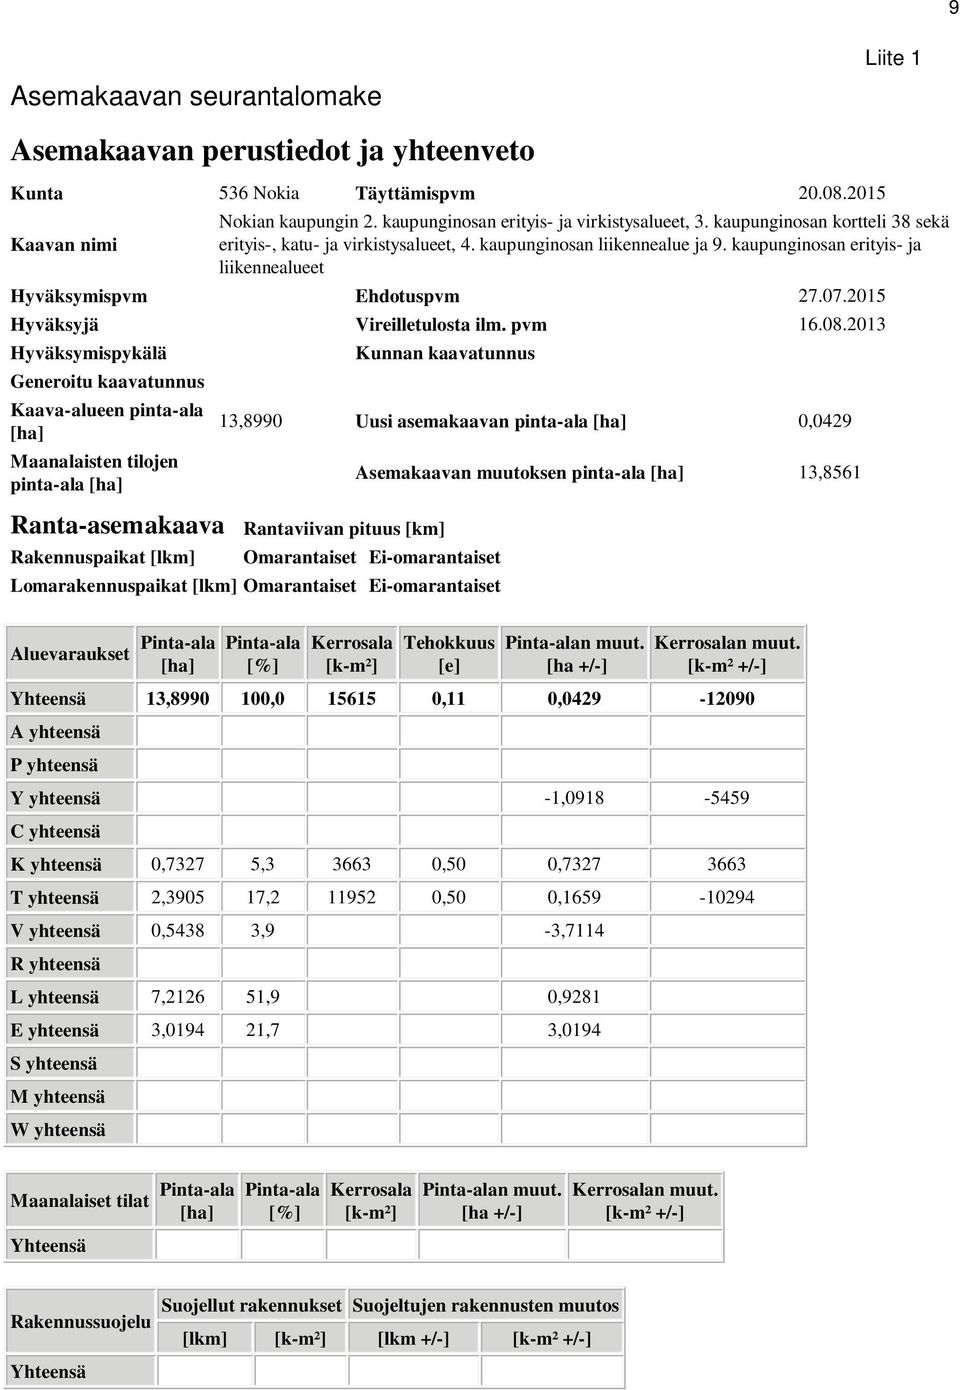 2015 Hyväksyjä Vireilletulosta ilm. pvm 16.08.